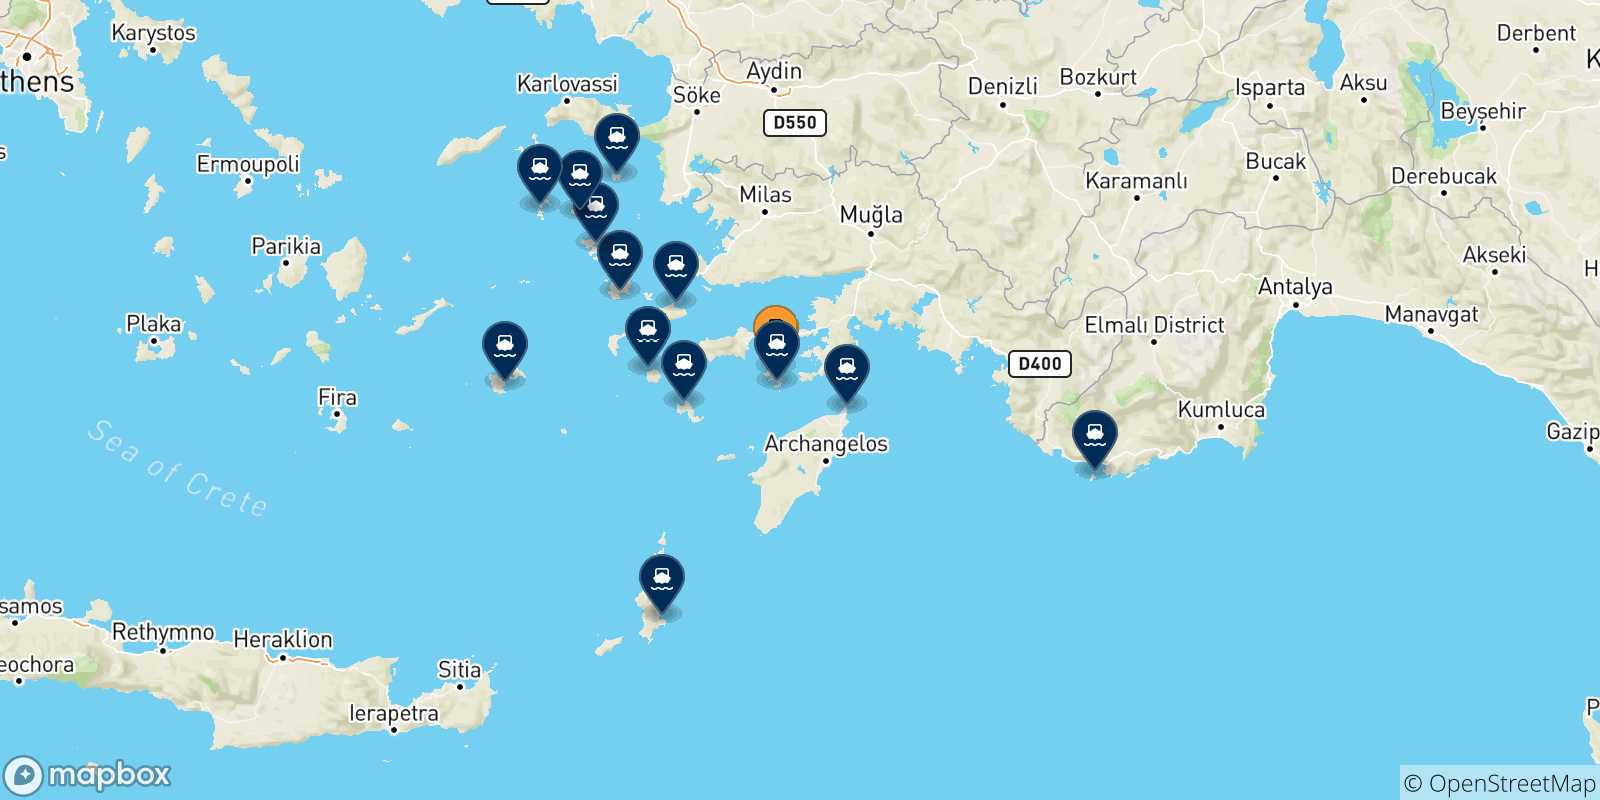 Mappa delle possibili rotte tra Symi e le Isole Dodecaneso